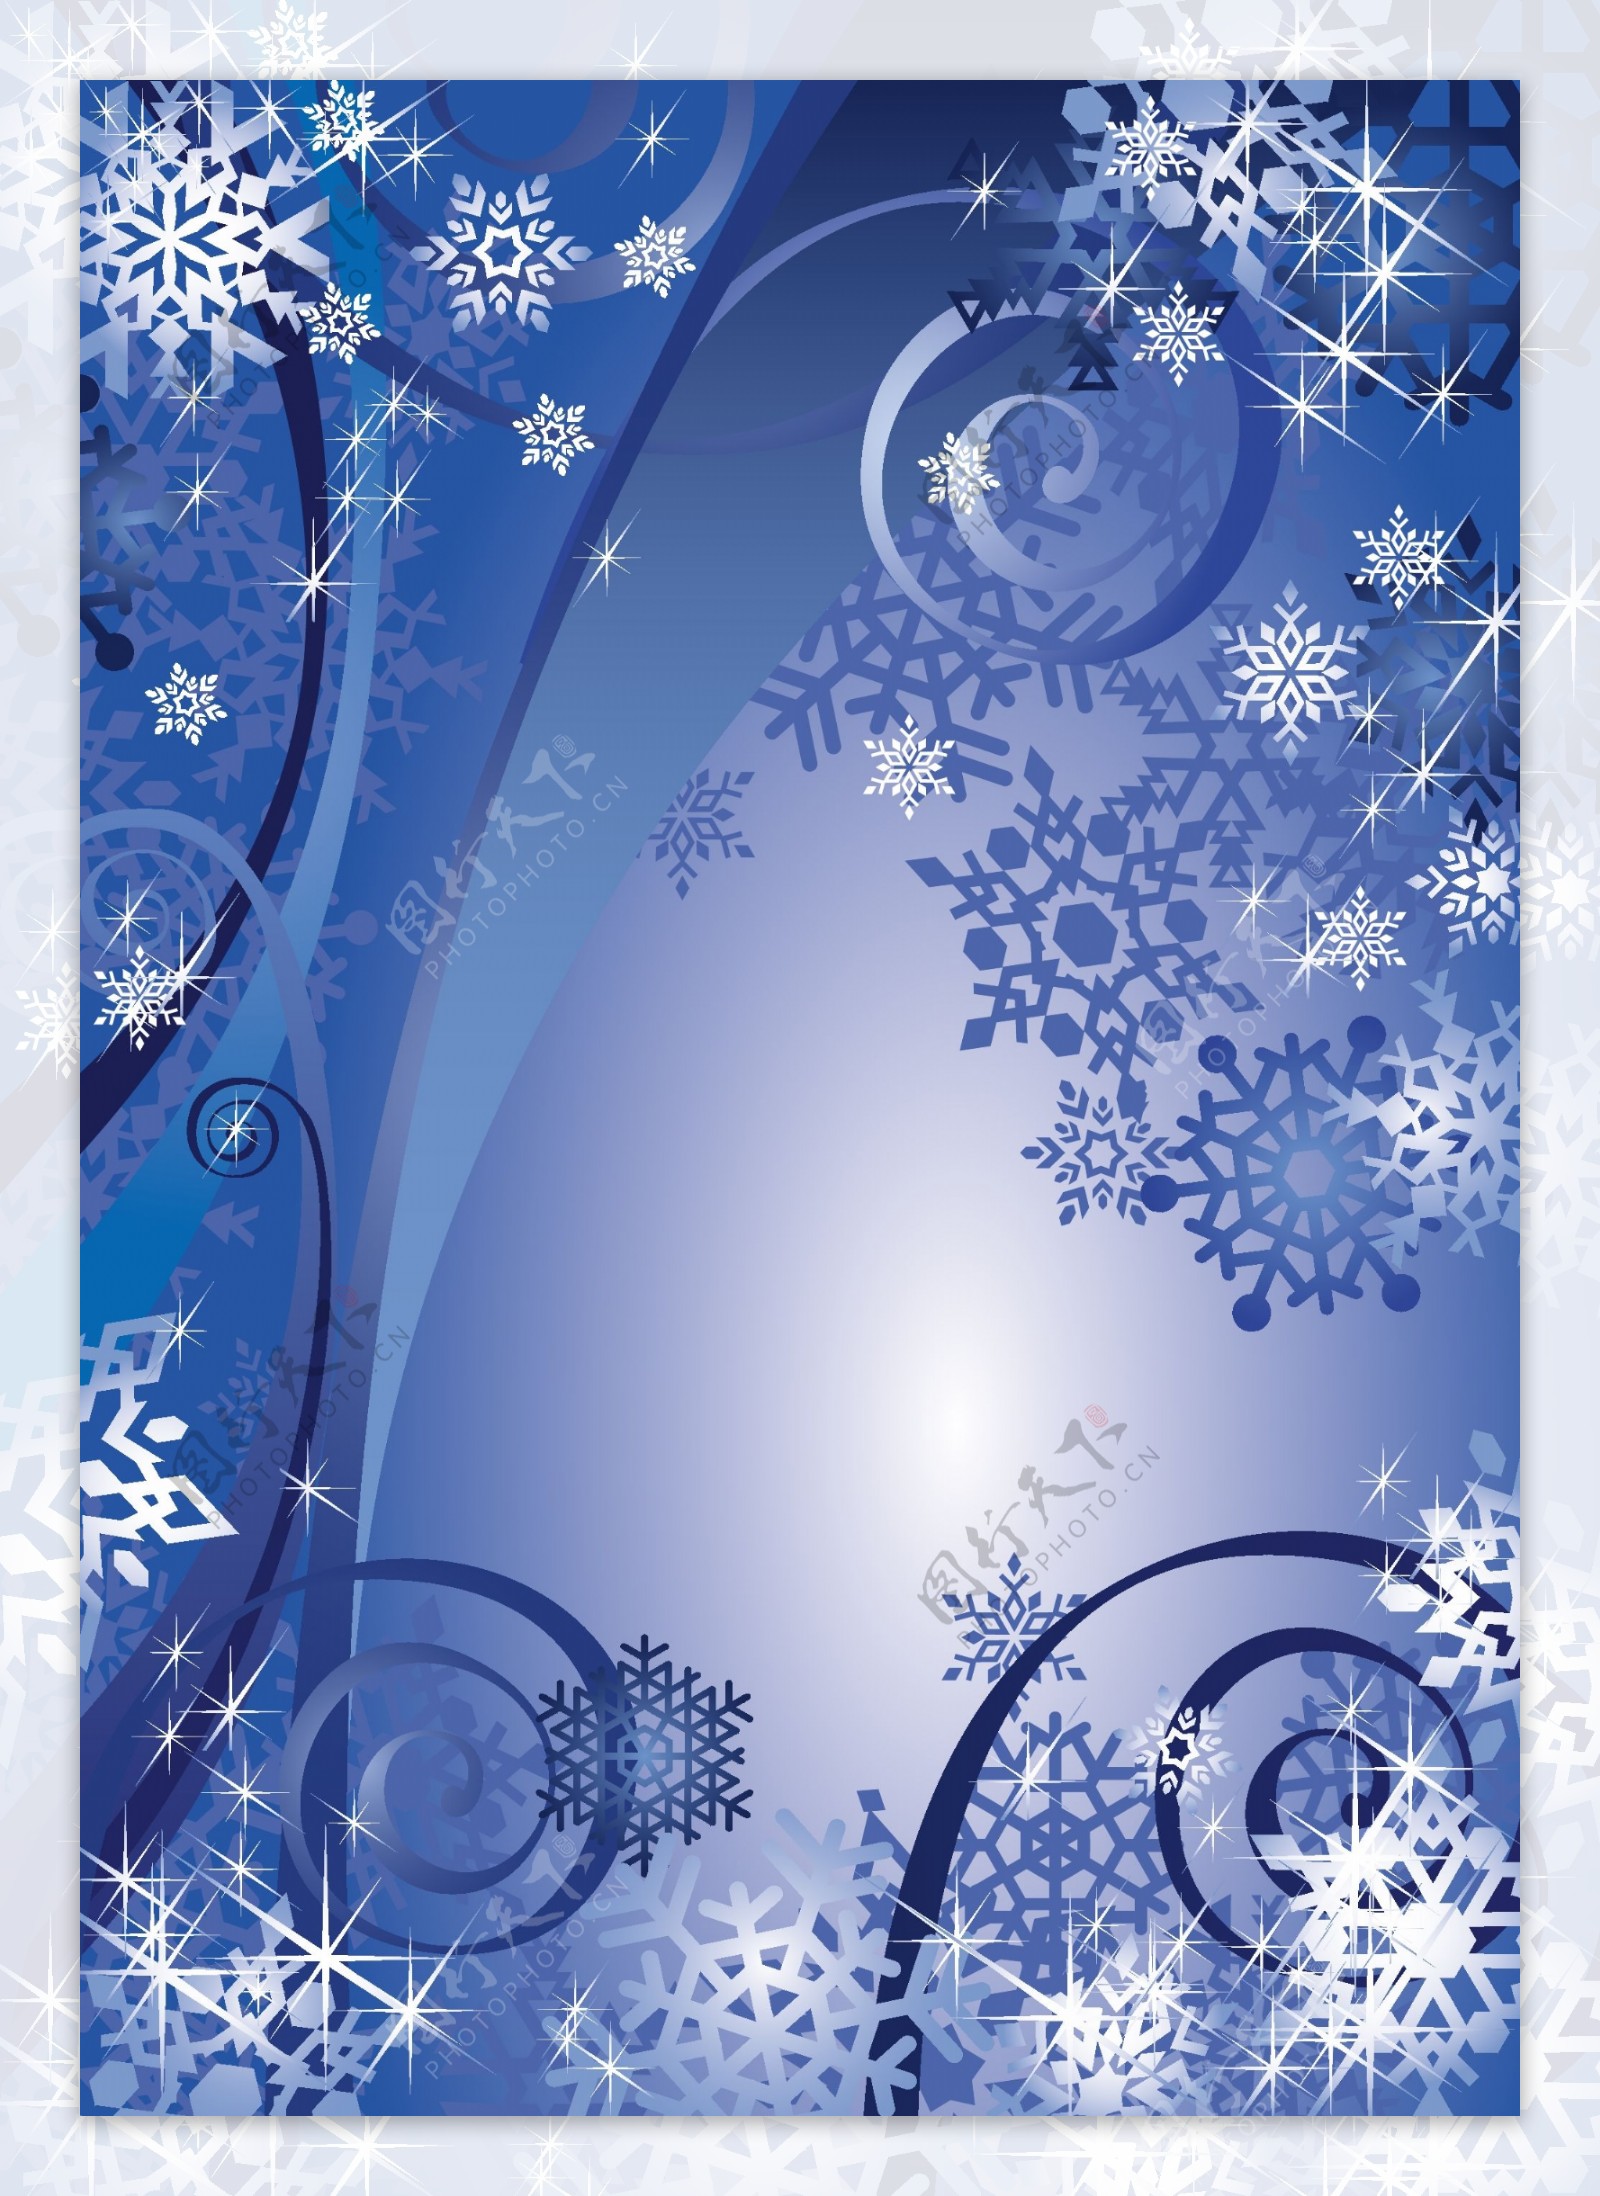 蓝色圣诞树雪花背景矢量素材